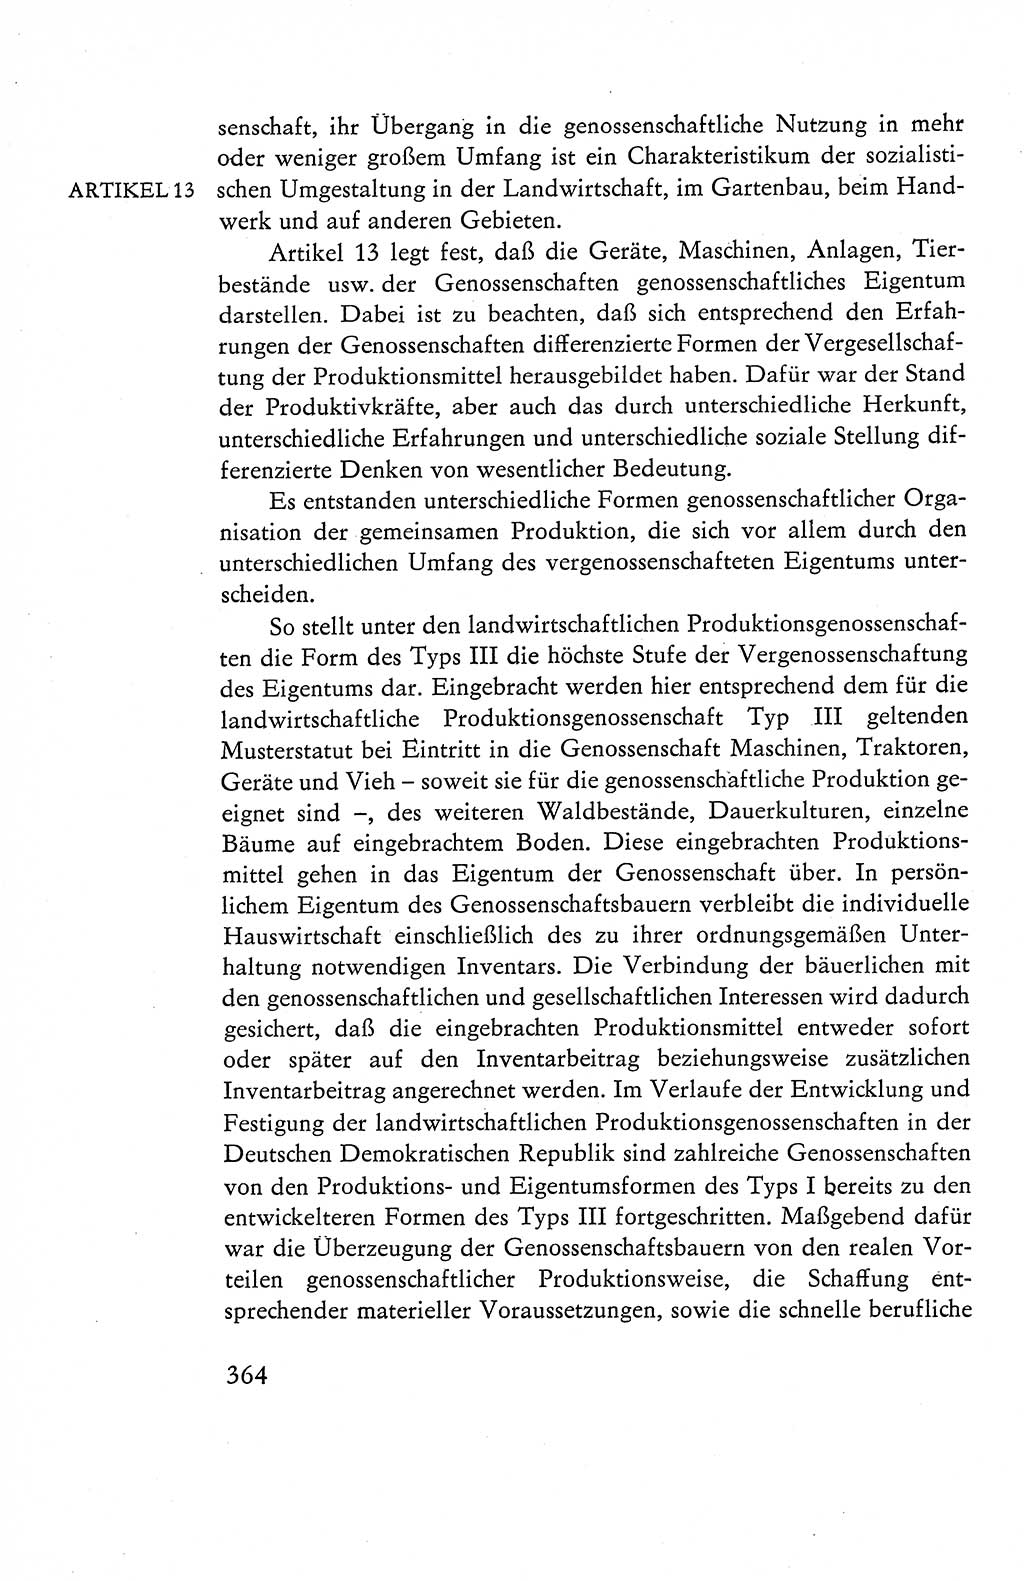 Verfassung der Deutschen Demokratischen Republik (DDR), Dokumente, Kommentar 1969, Band 1, Seite 364 (Verf. DDR Dok. Komm. 1969, Bd. 1, S. 364)